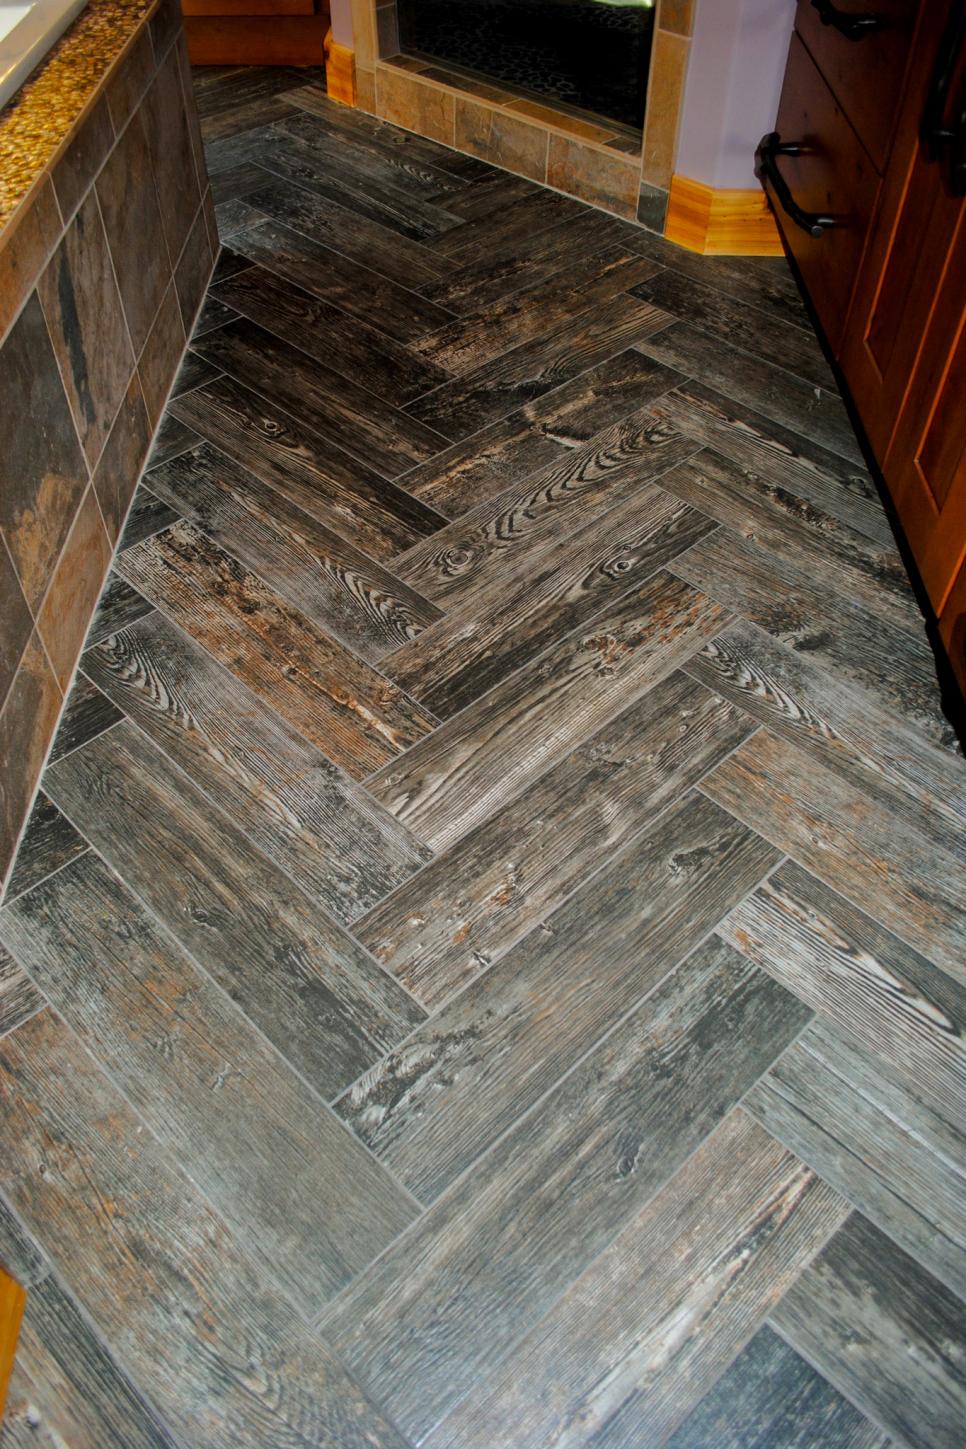 Wood Look Tile Floor In Herringbone, Wood Look Tile Floor Layout